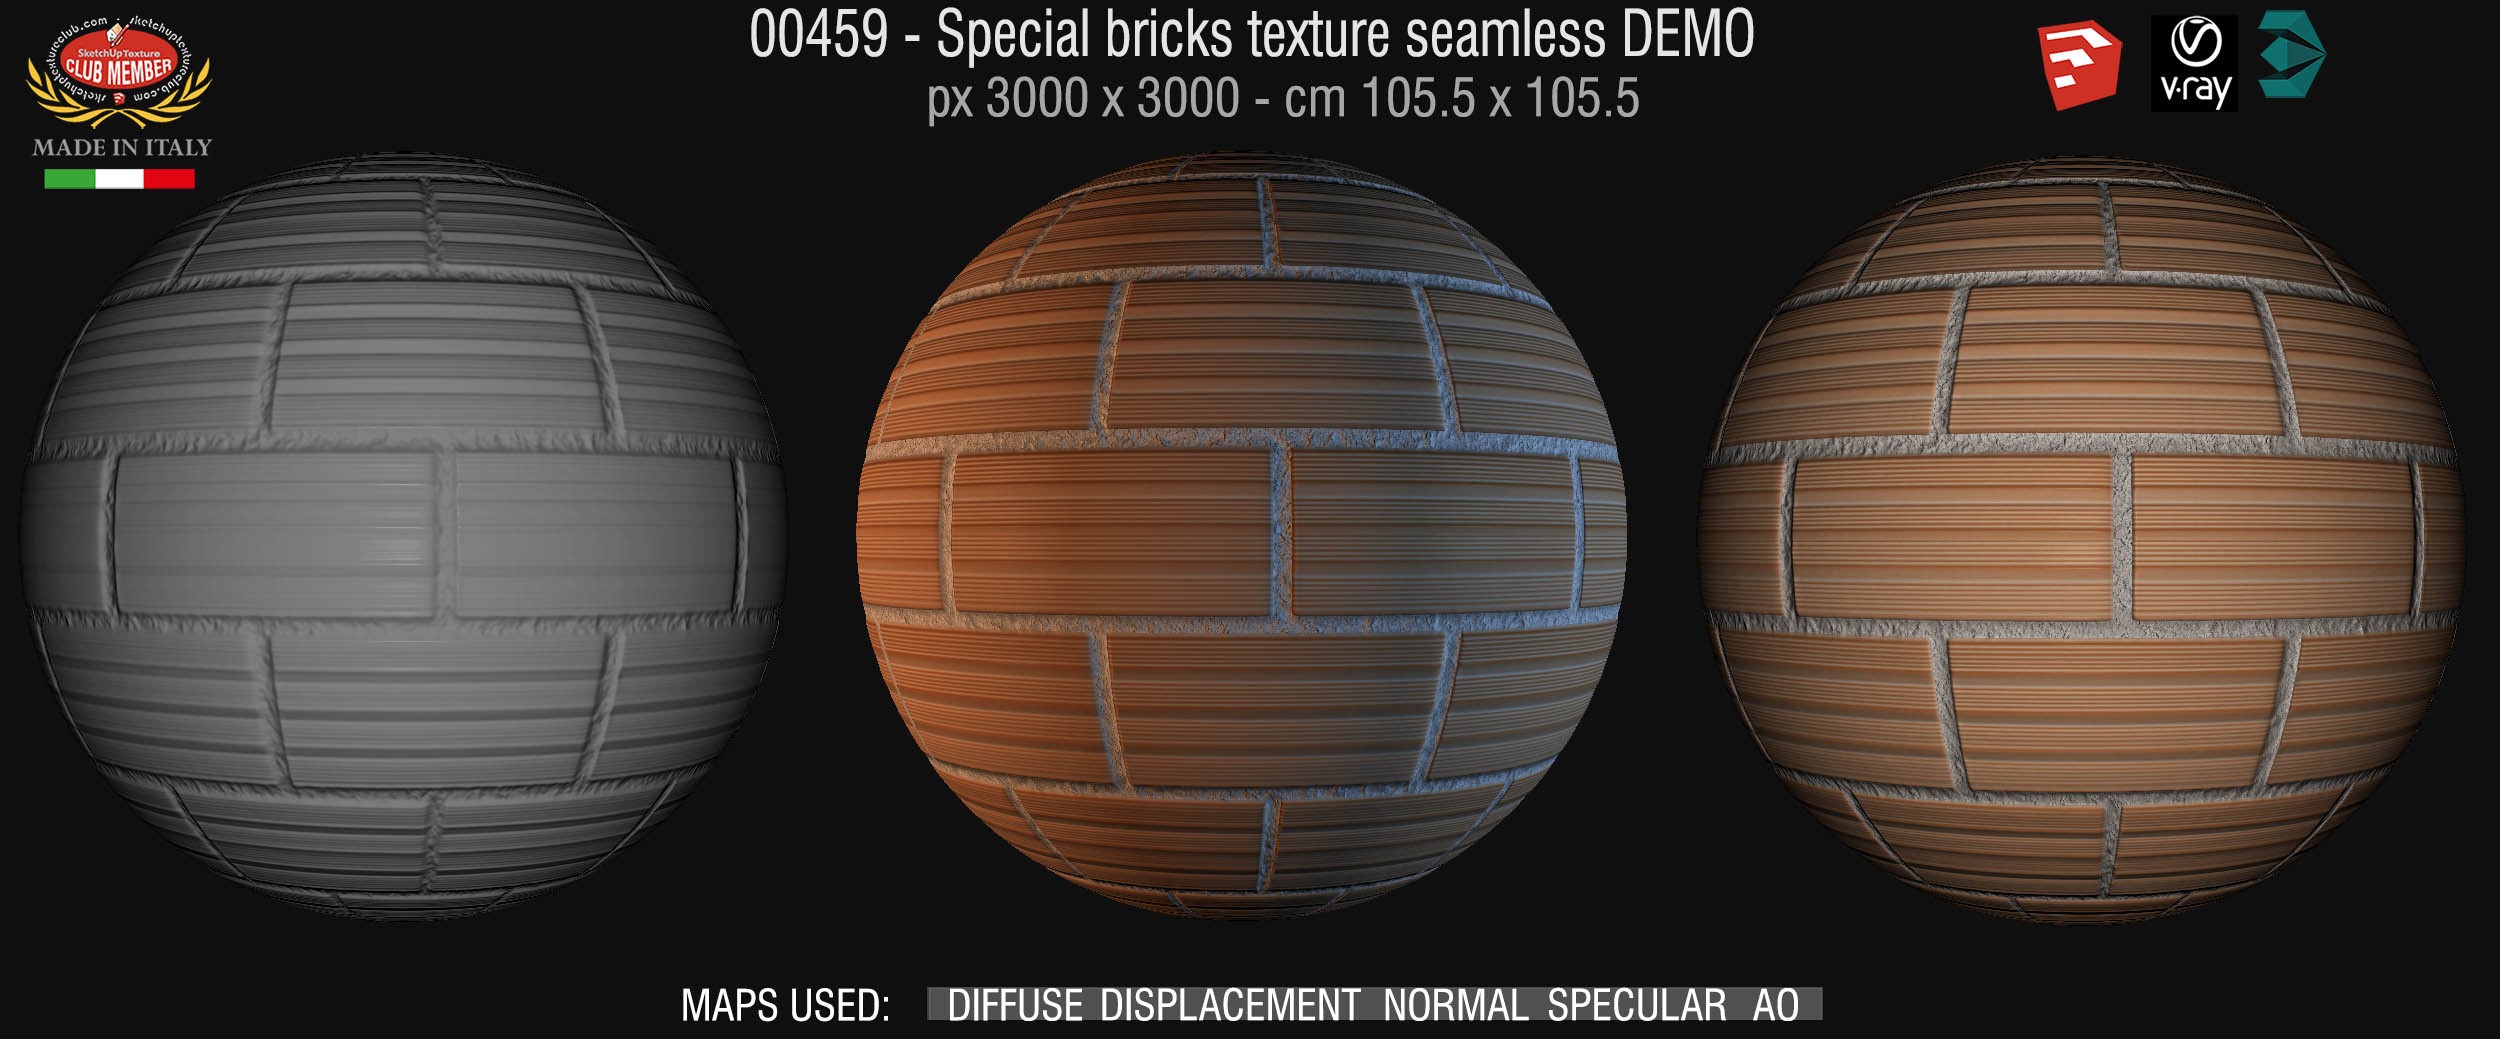 00459 Special bricks texture seamless + maps DEMO